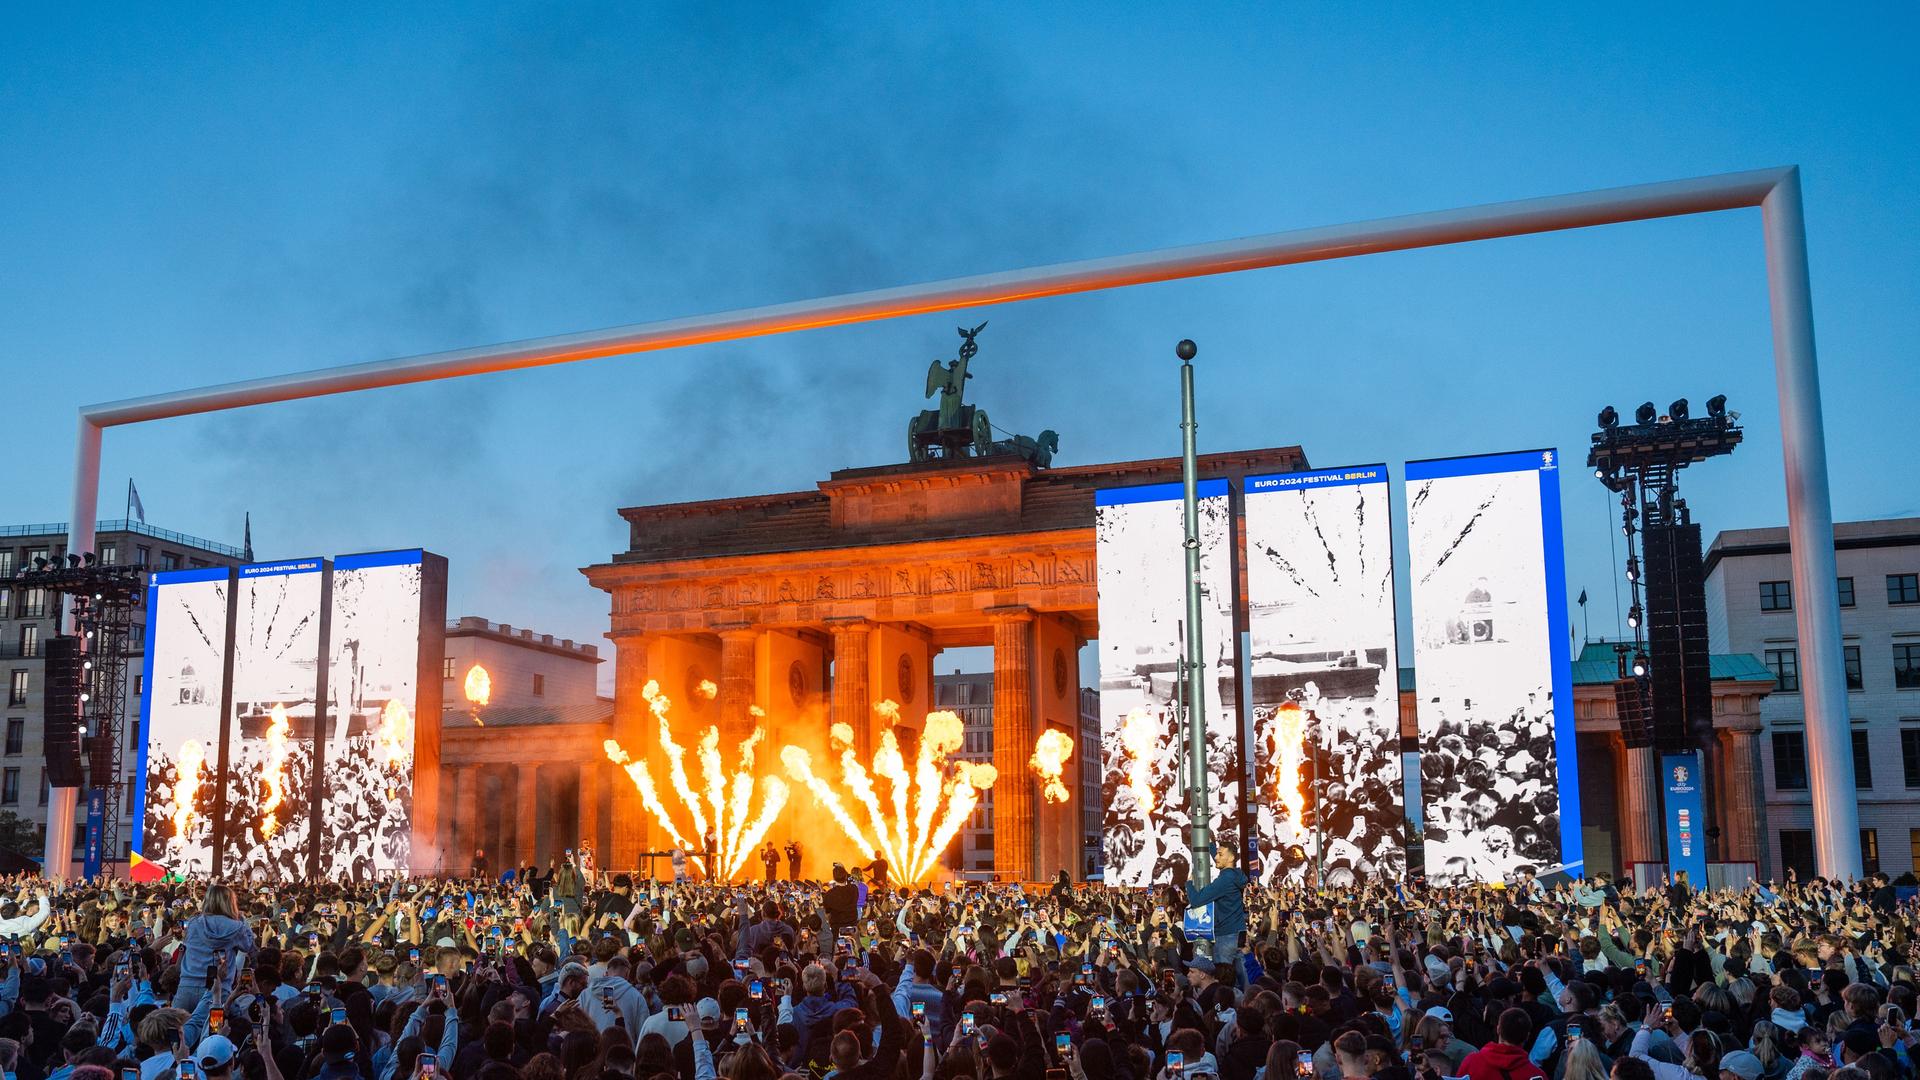 Eröffnungsfeier der Fanmeile für die Fußball-Europameisterschaft am Brandenburger Tor in Berlin. Auf der Bühne wird Feuerwerk gezündet. 